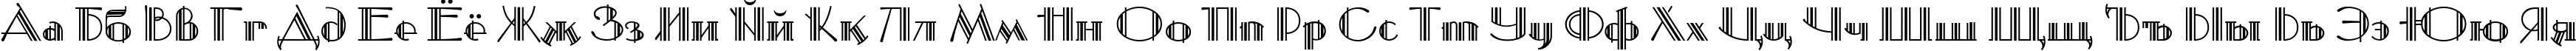 Пример написания русского алфавита шрифтом Mustang Deco